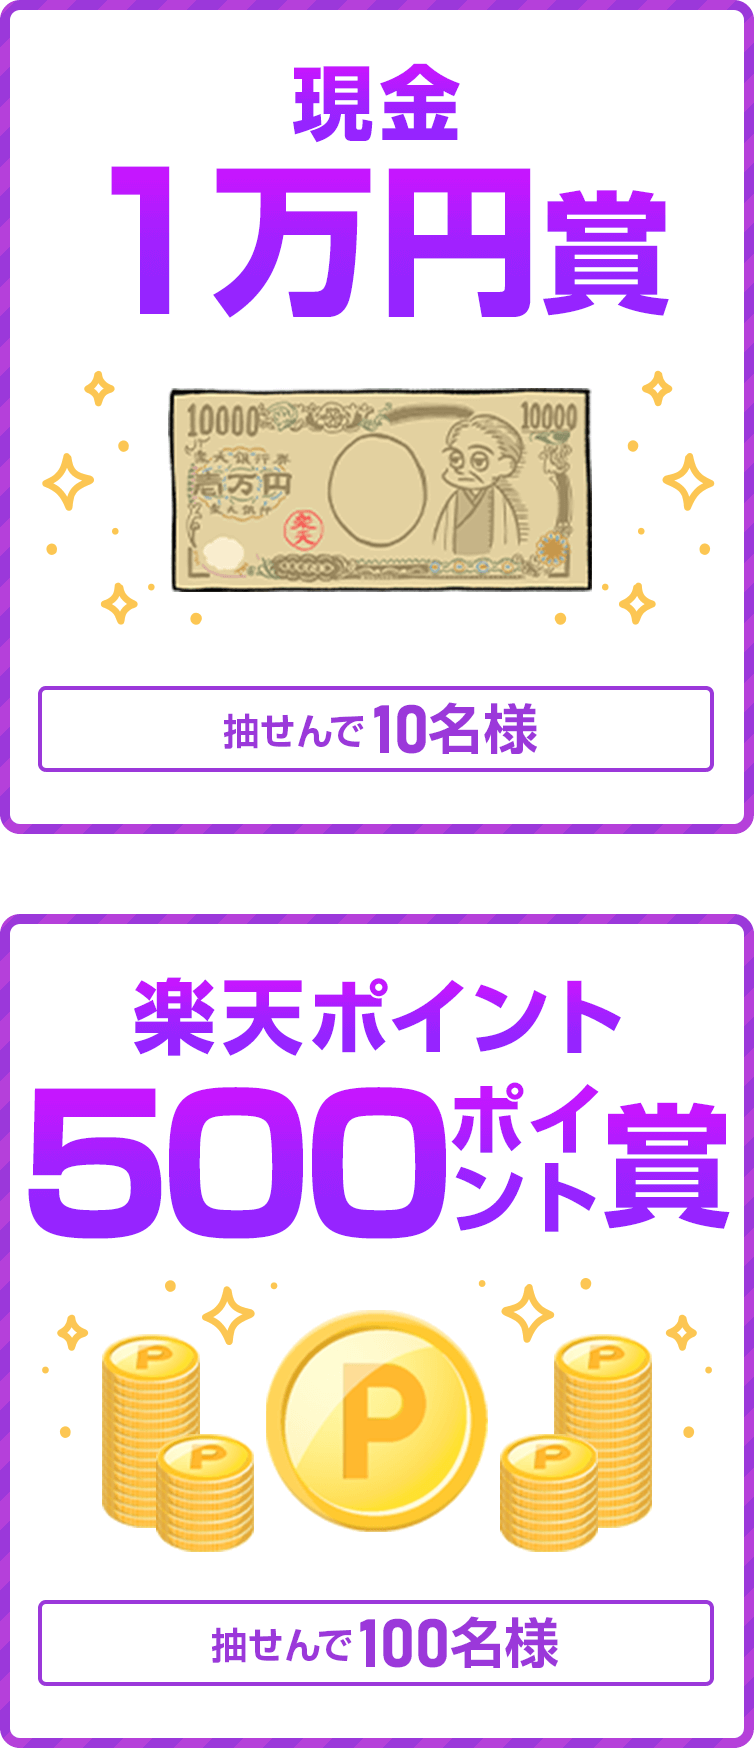 
                
                  現金1万円賞
                  抽せんで10名様
                  
                  500ポイント賞
                  楽天ポイント(期間限定)抽せんで100名様
                  
                